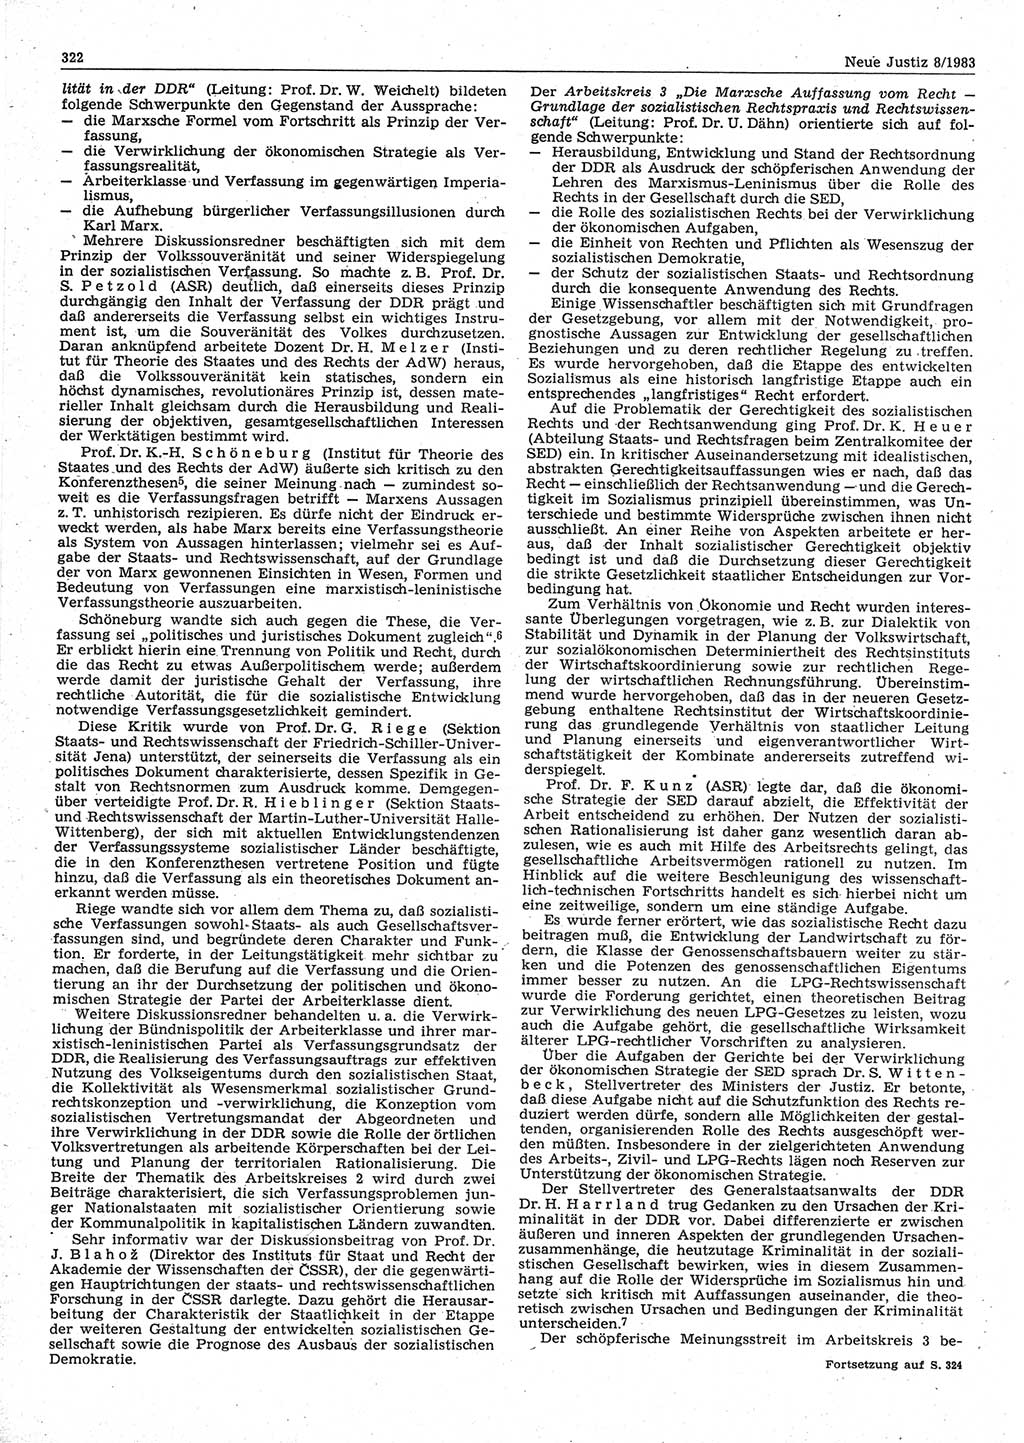 Neue Justiz (NJ), Zeitschrift für sozialistisches Recht und Gesetzlichkeit [Deutsche Demokratische Republik (DDR)], 37. Jahrgang 1983, Seite 322 (NJ DDR 1983, S. 322)